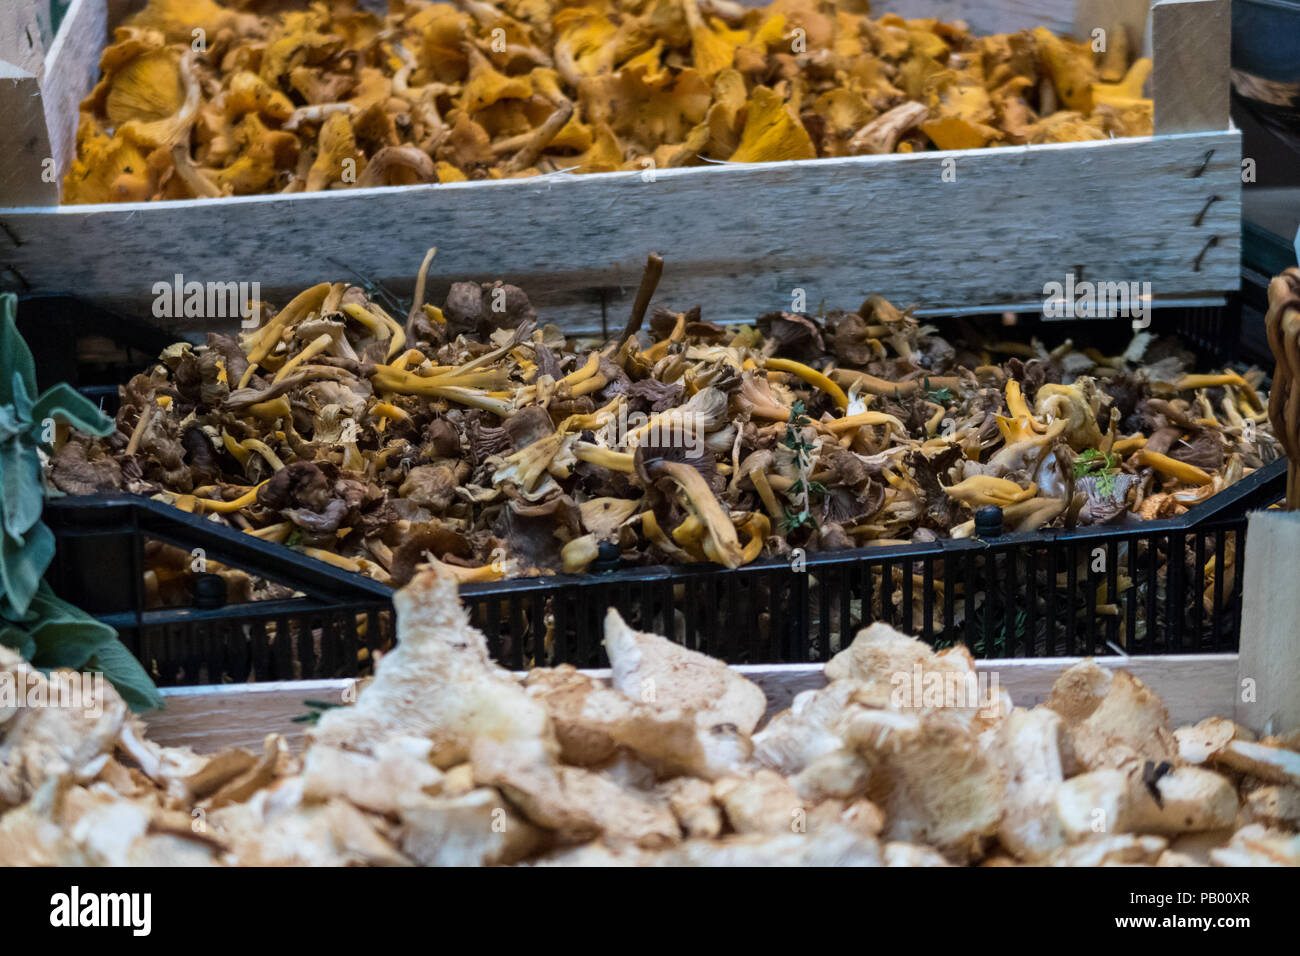 Selezione di funghi e funghi in London Borough Market, REGNO UNITO Foto Stock